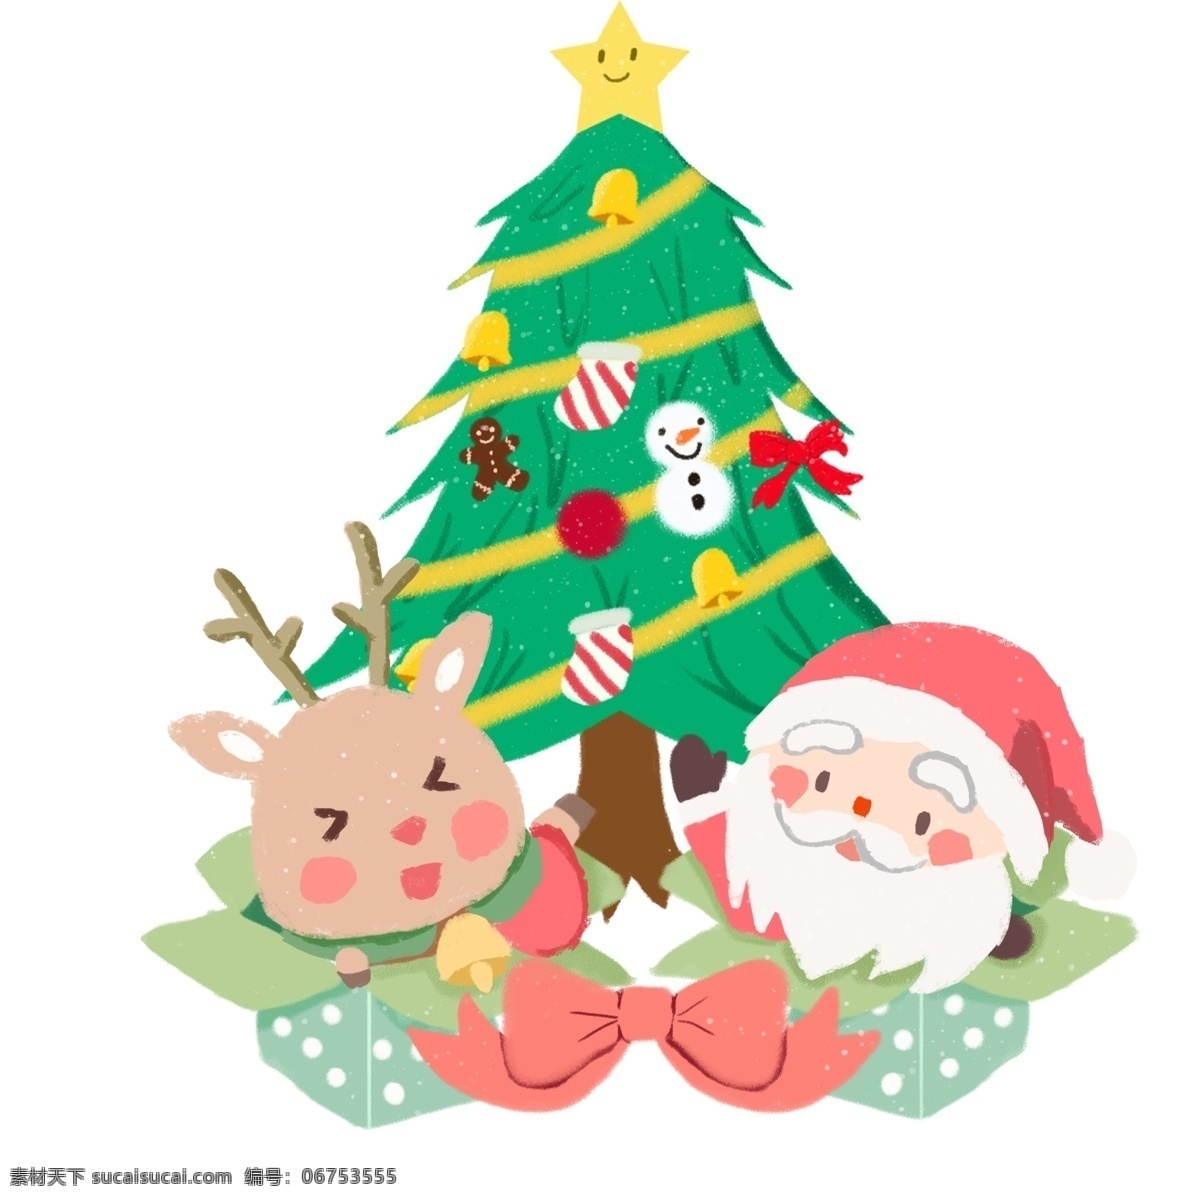 圣诞节 送礼 圣诞老人 卡通 手绘 圣诞 麋鹿 礼物 礼盒 雪 白雪 圣诞树 姜饼人 蝴蝶结 可爱 物 雪人